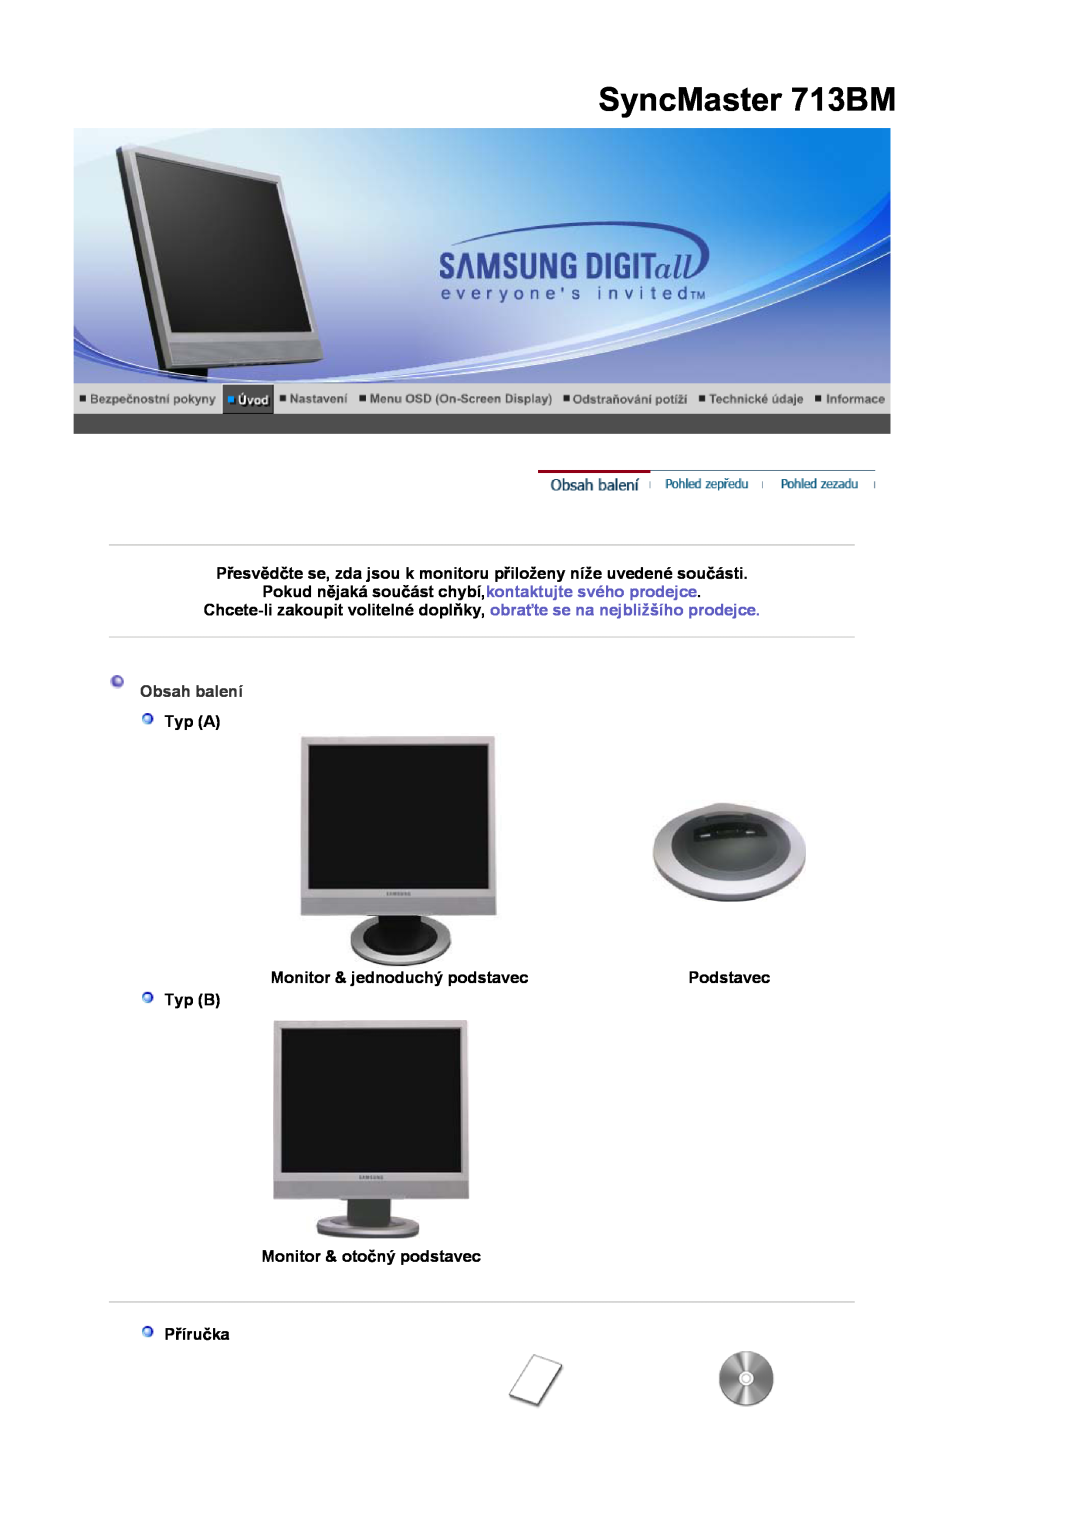 Samsung LS19MJSTS7/EDC manual SyncMaster 713BM, Typ A, Monitor & jednoduchý podstavec, Podstavec, Obsah balení, PĜíruþka 